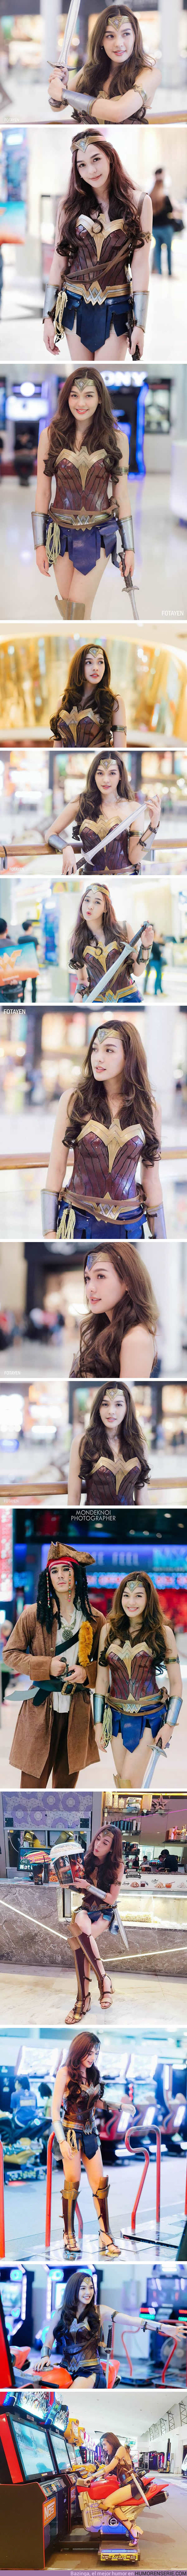 14722 - GALERÍA: Uno de los mejores cosplays de Wonder woman